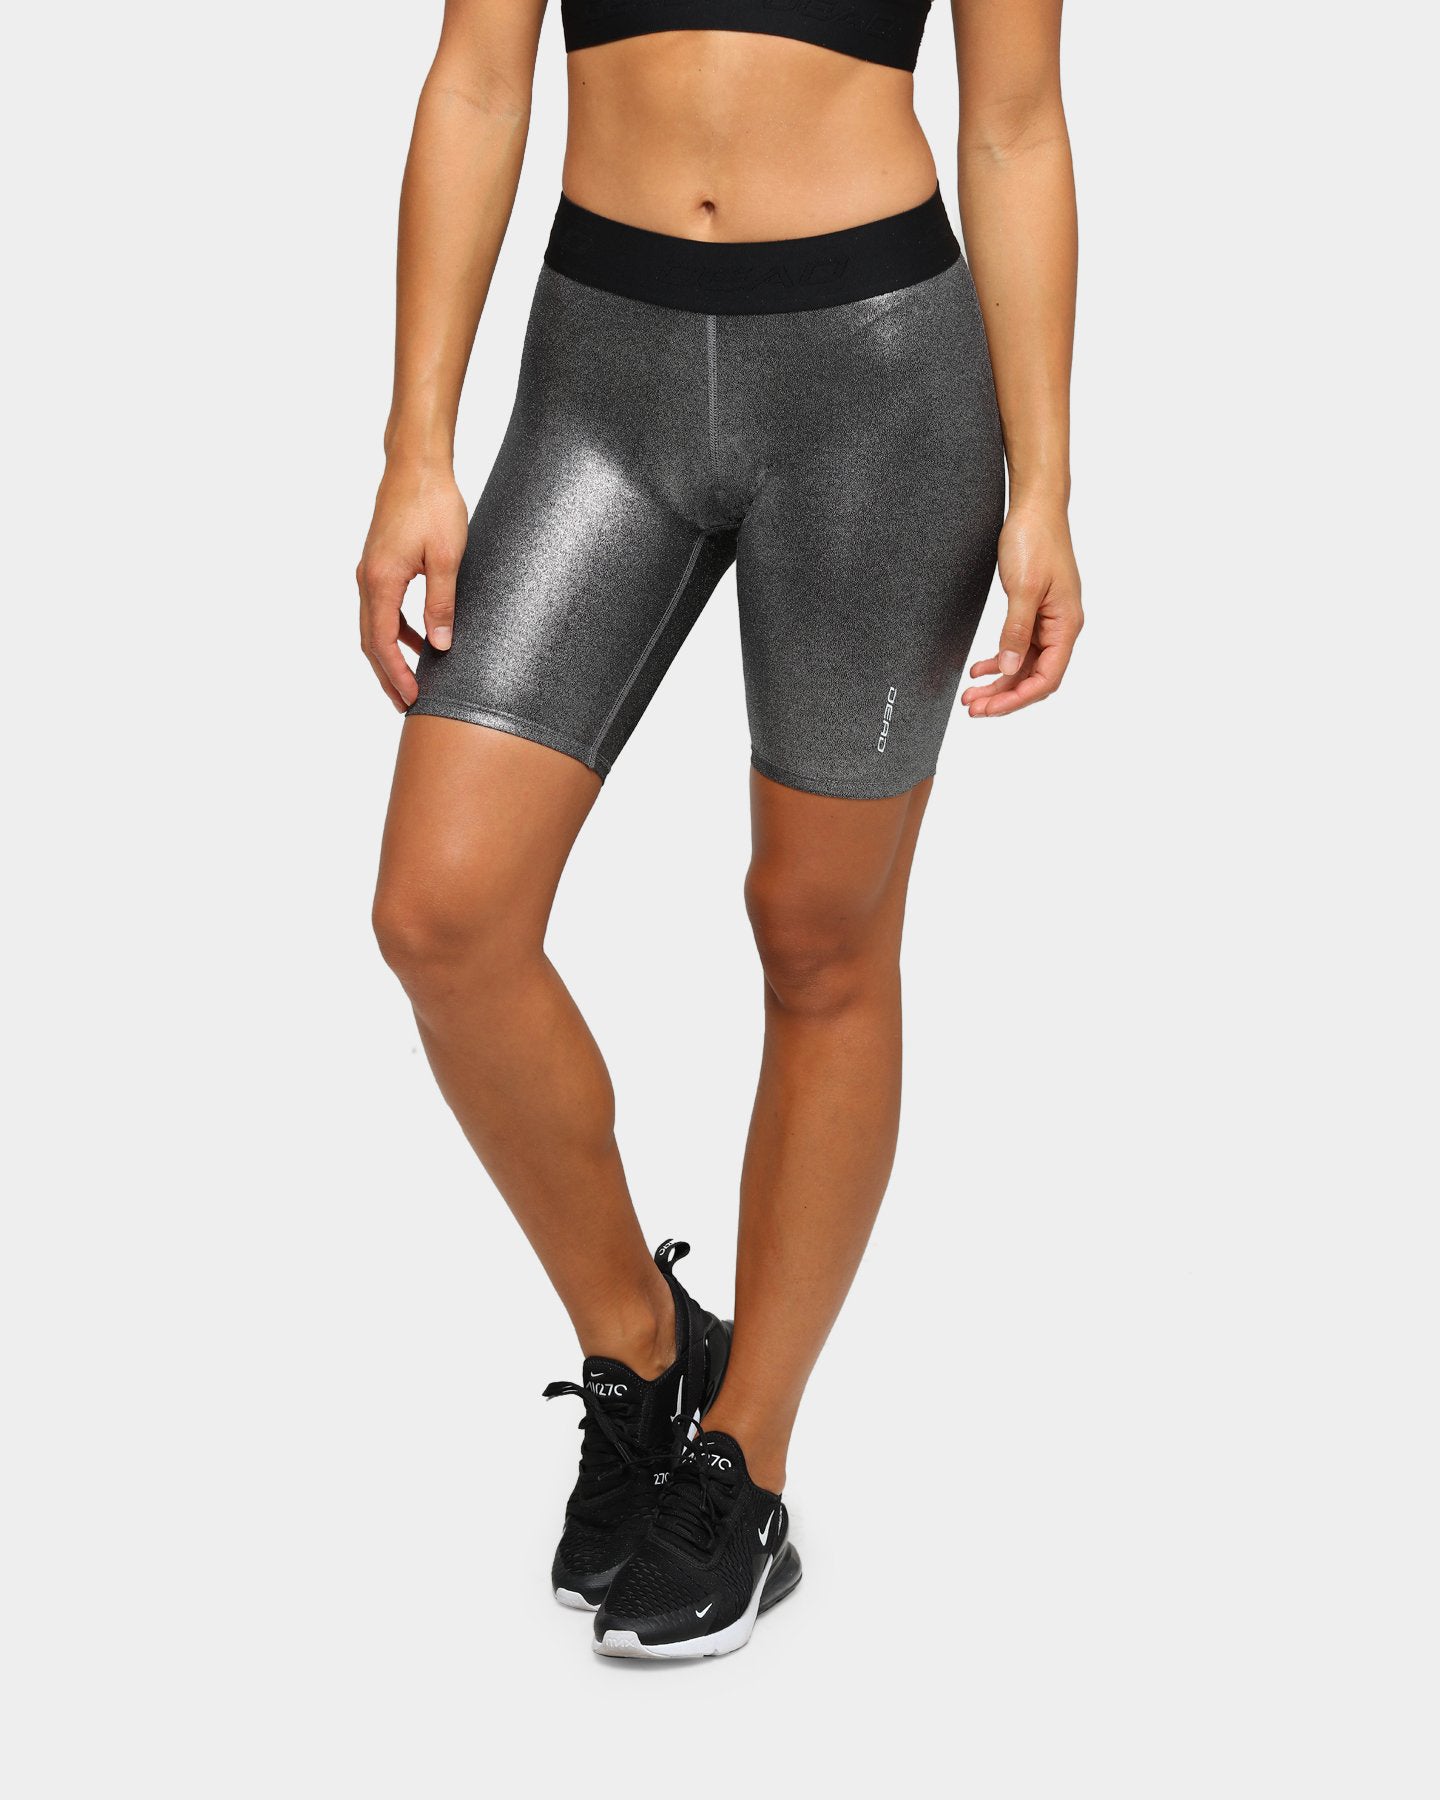 silver bike shorts